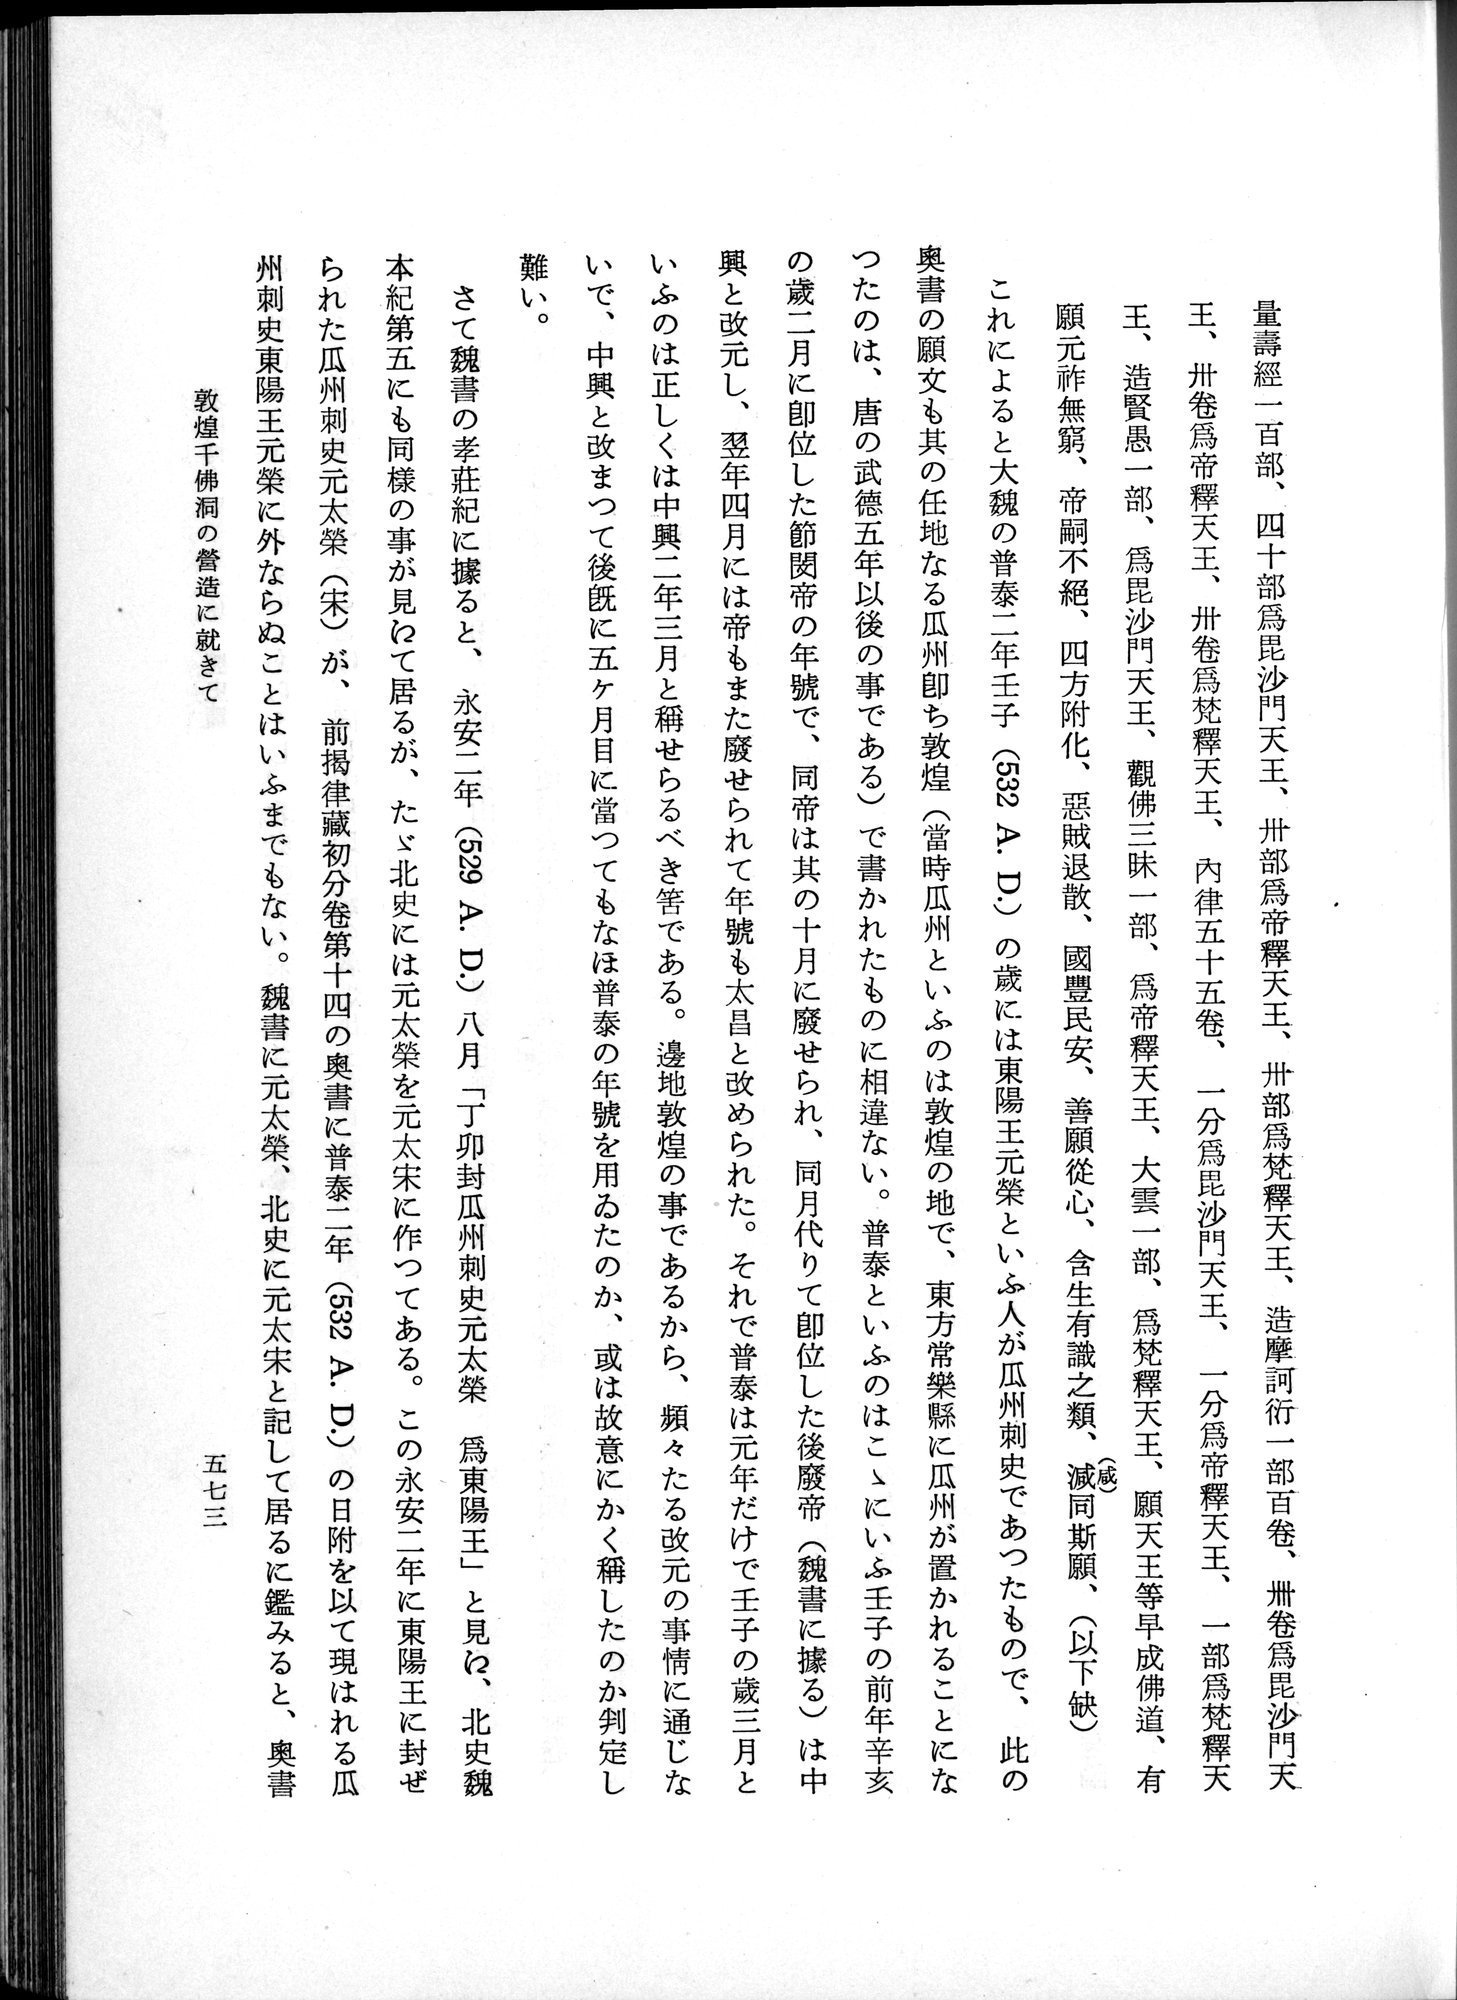 羽田博士史学論文集 : vol.1 / Page 611 (Grayscale High Resolution Image)